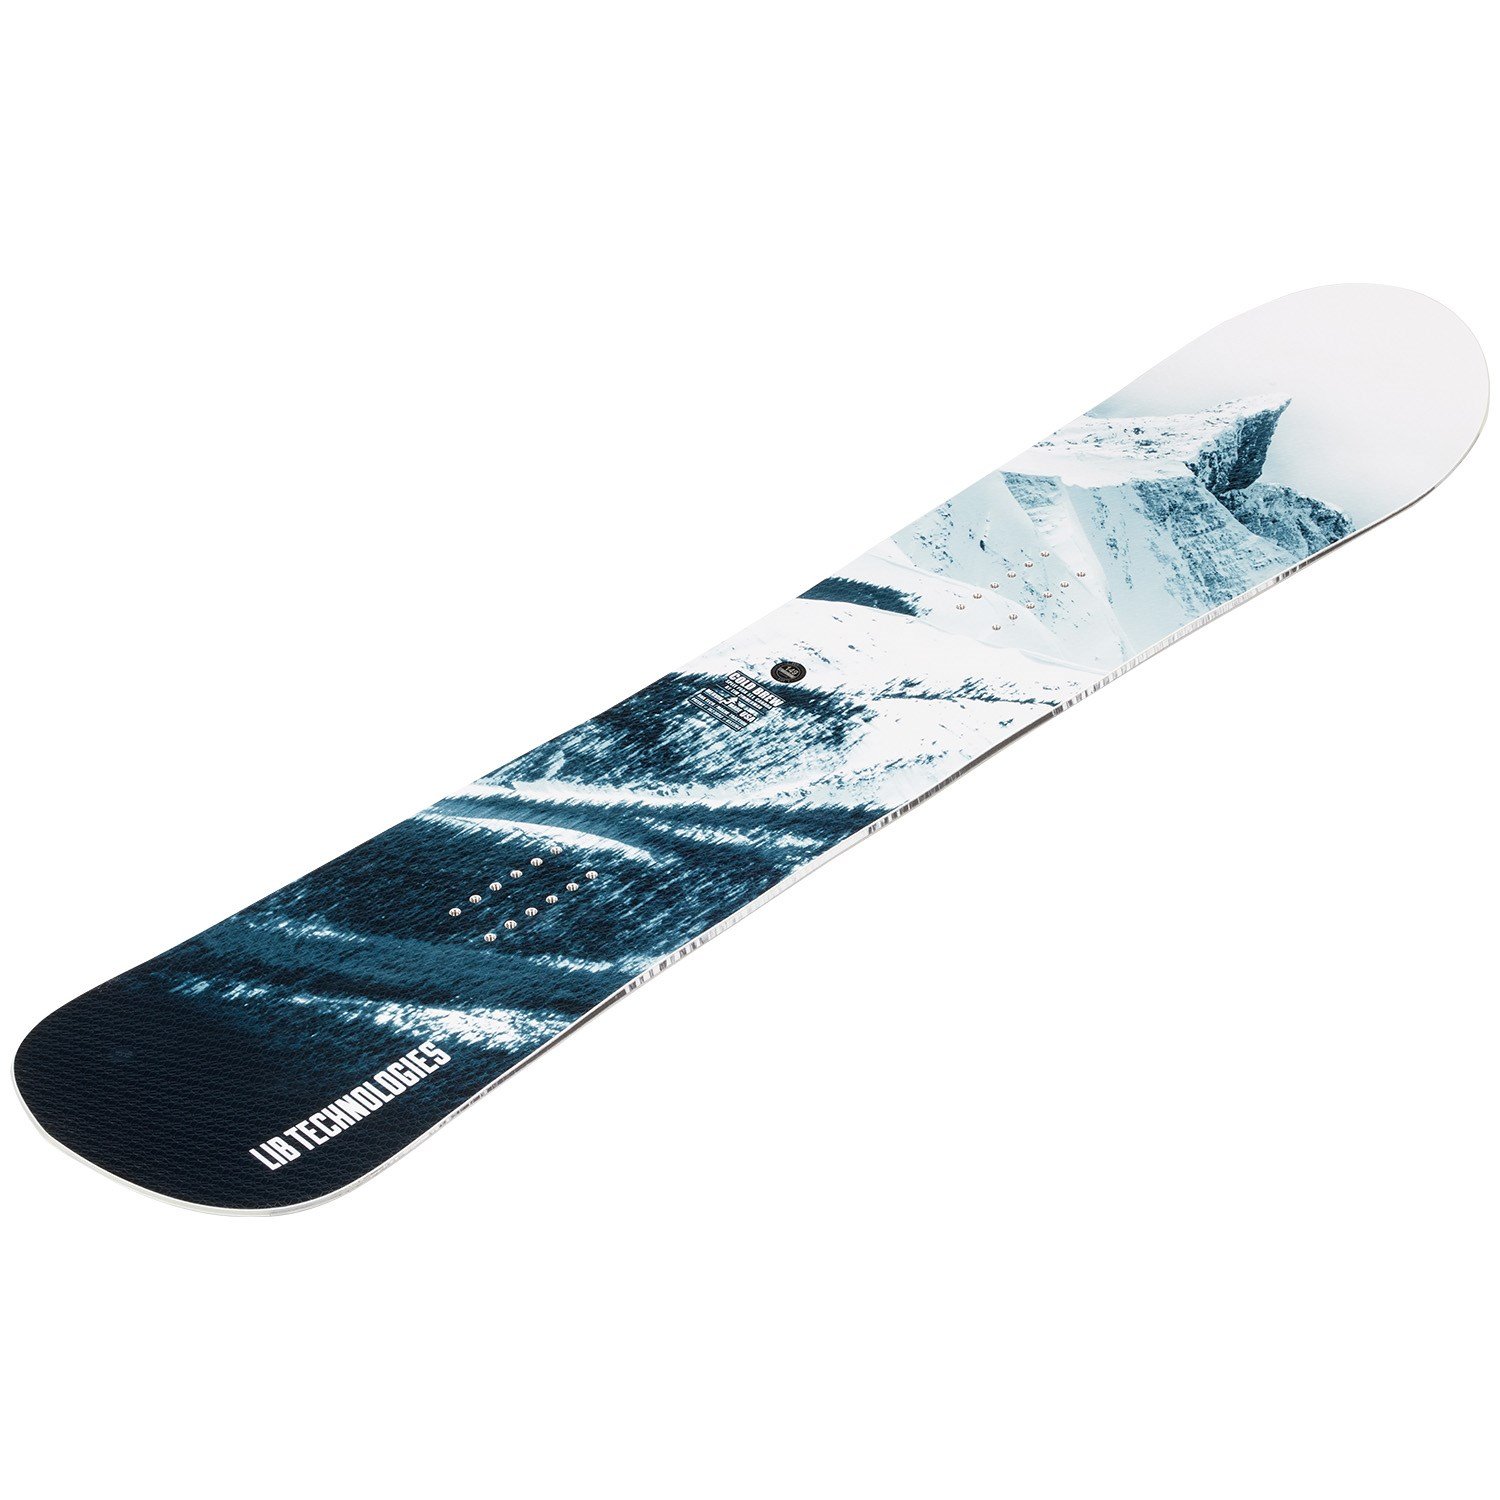 Cold Brew LibTech Tabla Snowboard Hombre 2021/22